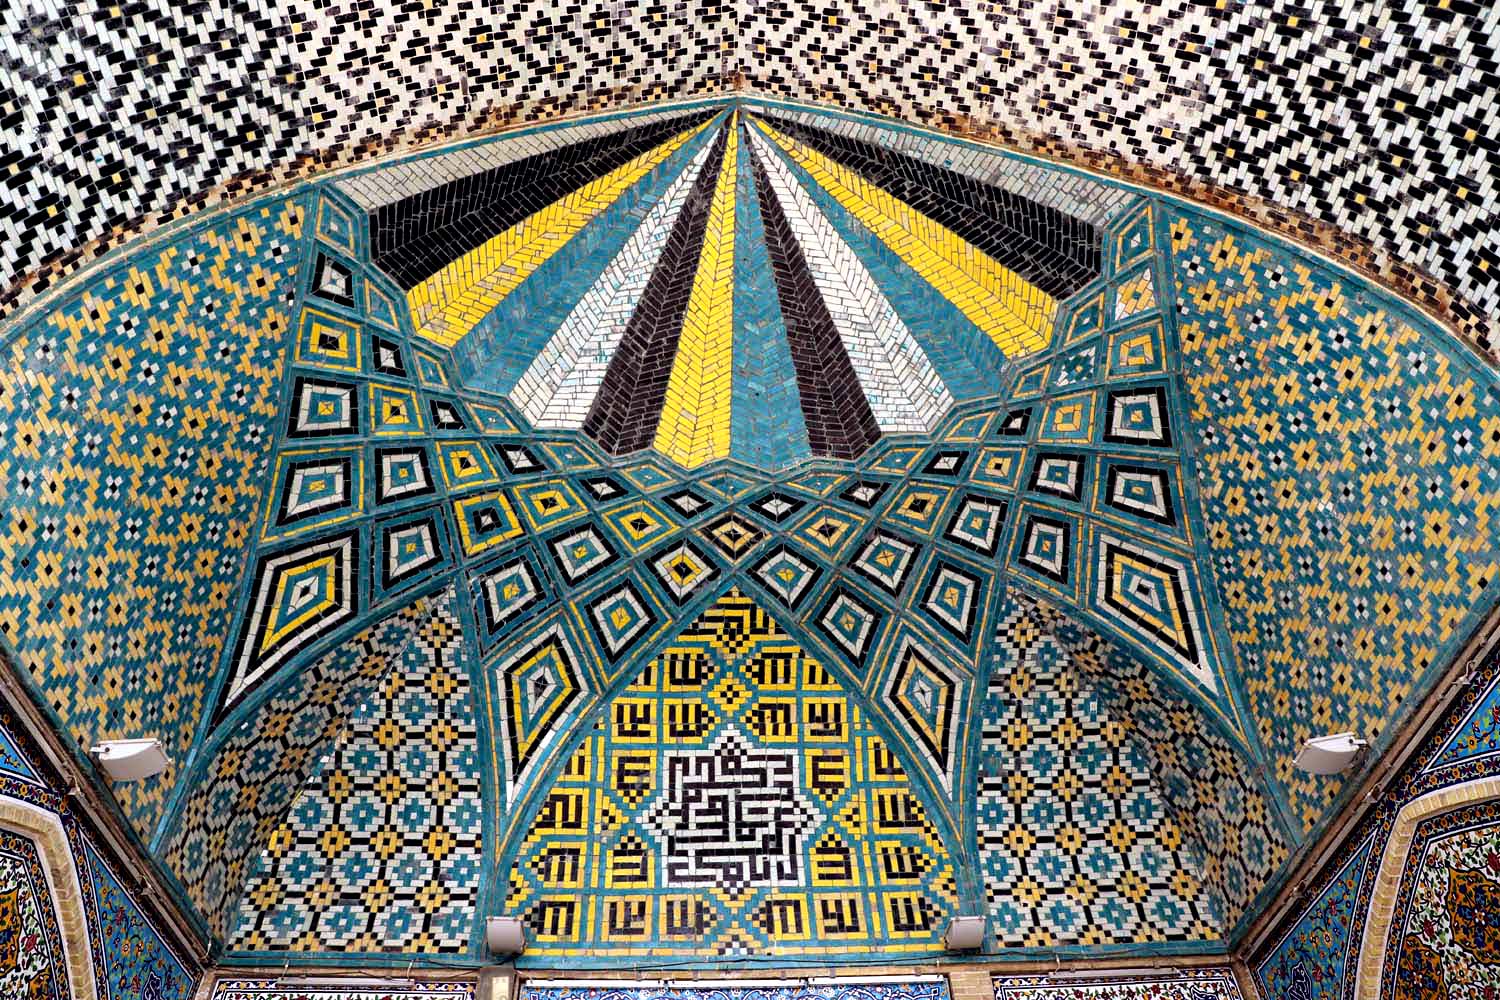 مسجد جامع زنجان،جاذبه ای ماندگار با معماری چشم نواز